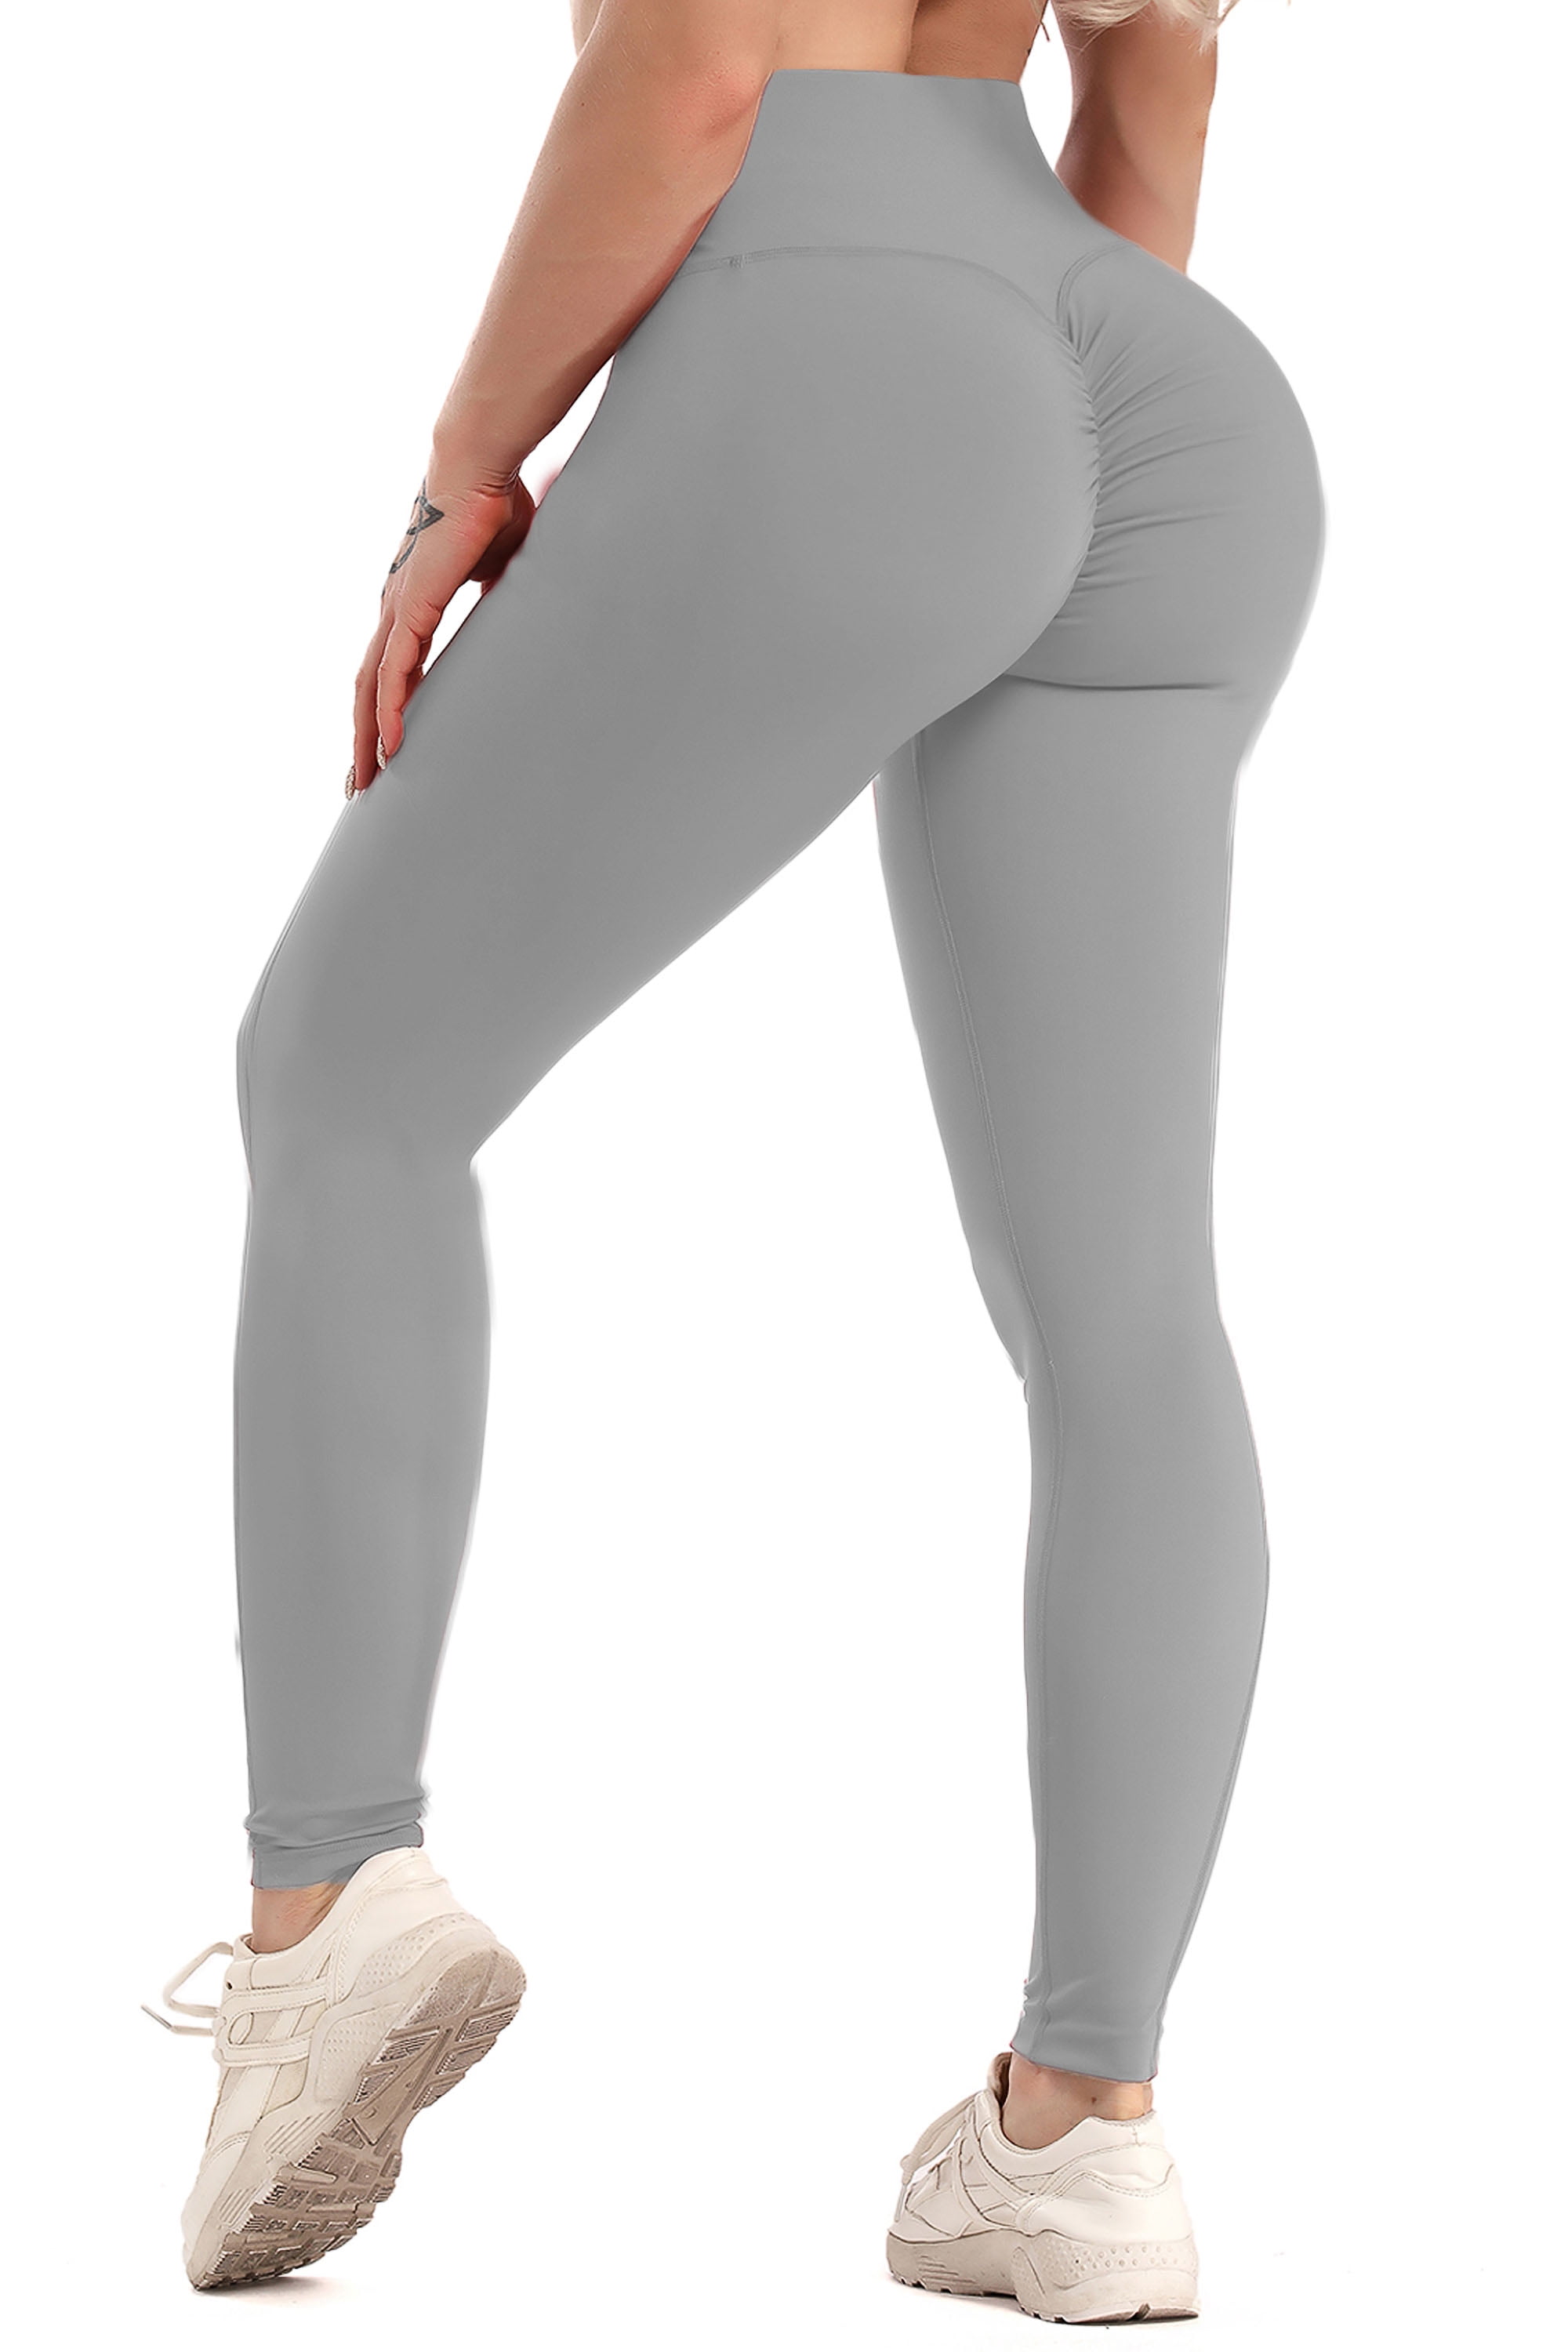 Fittoo Women Yoga Pants High Waist Scrunch Ruched Butt Lifting Workout Leggings Sport Fitness